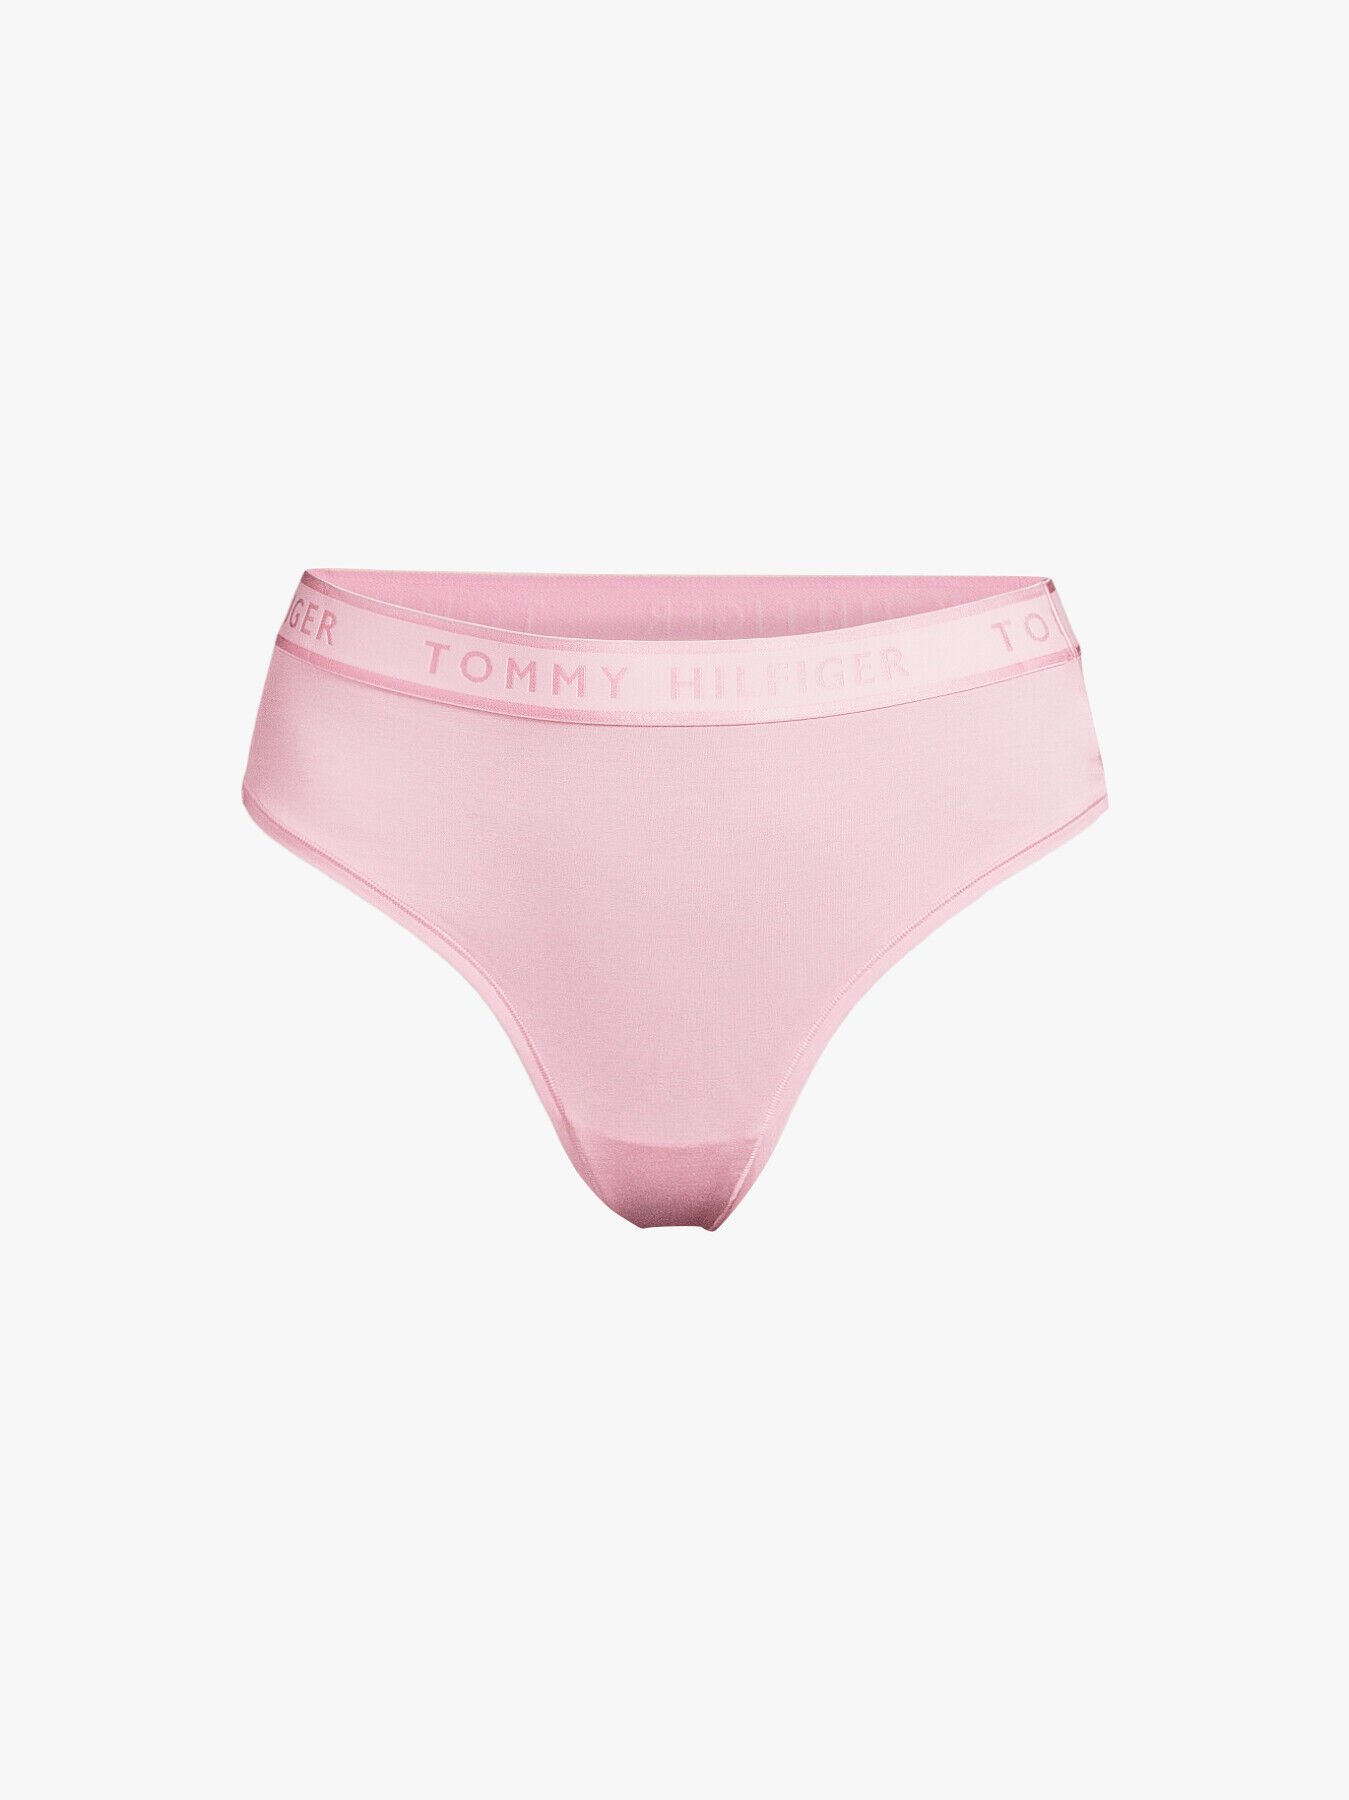 Tommy Hilfiger Underwear Thong in Pastel Pink